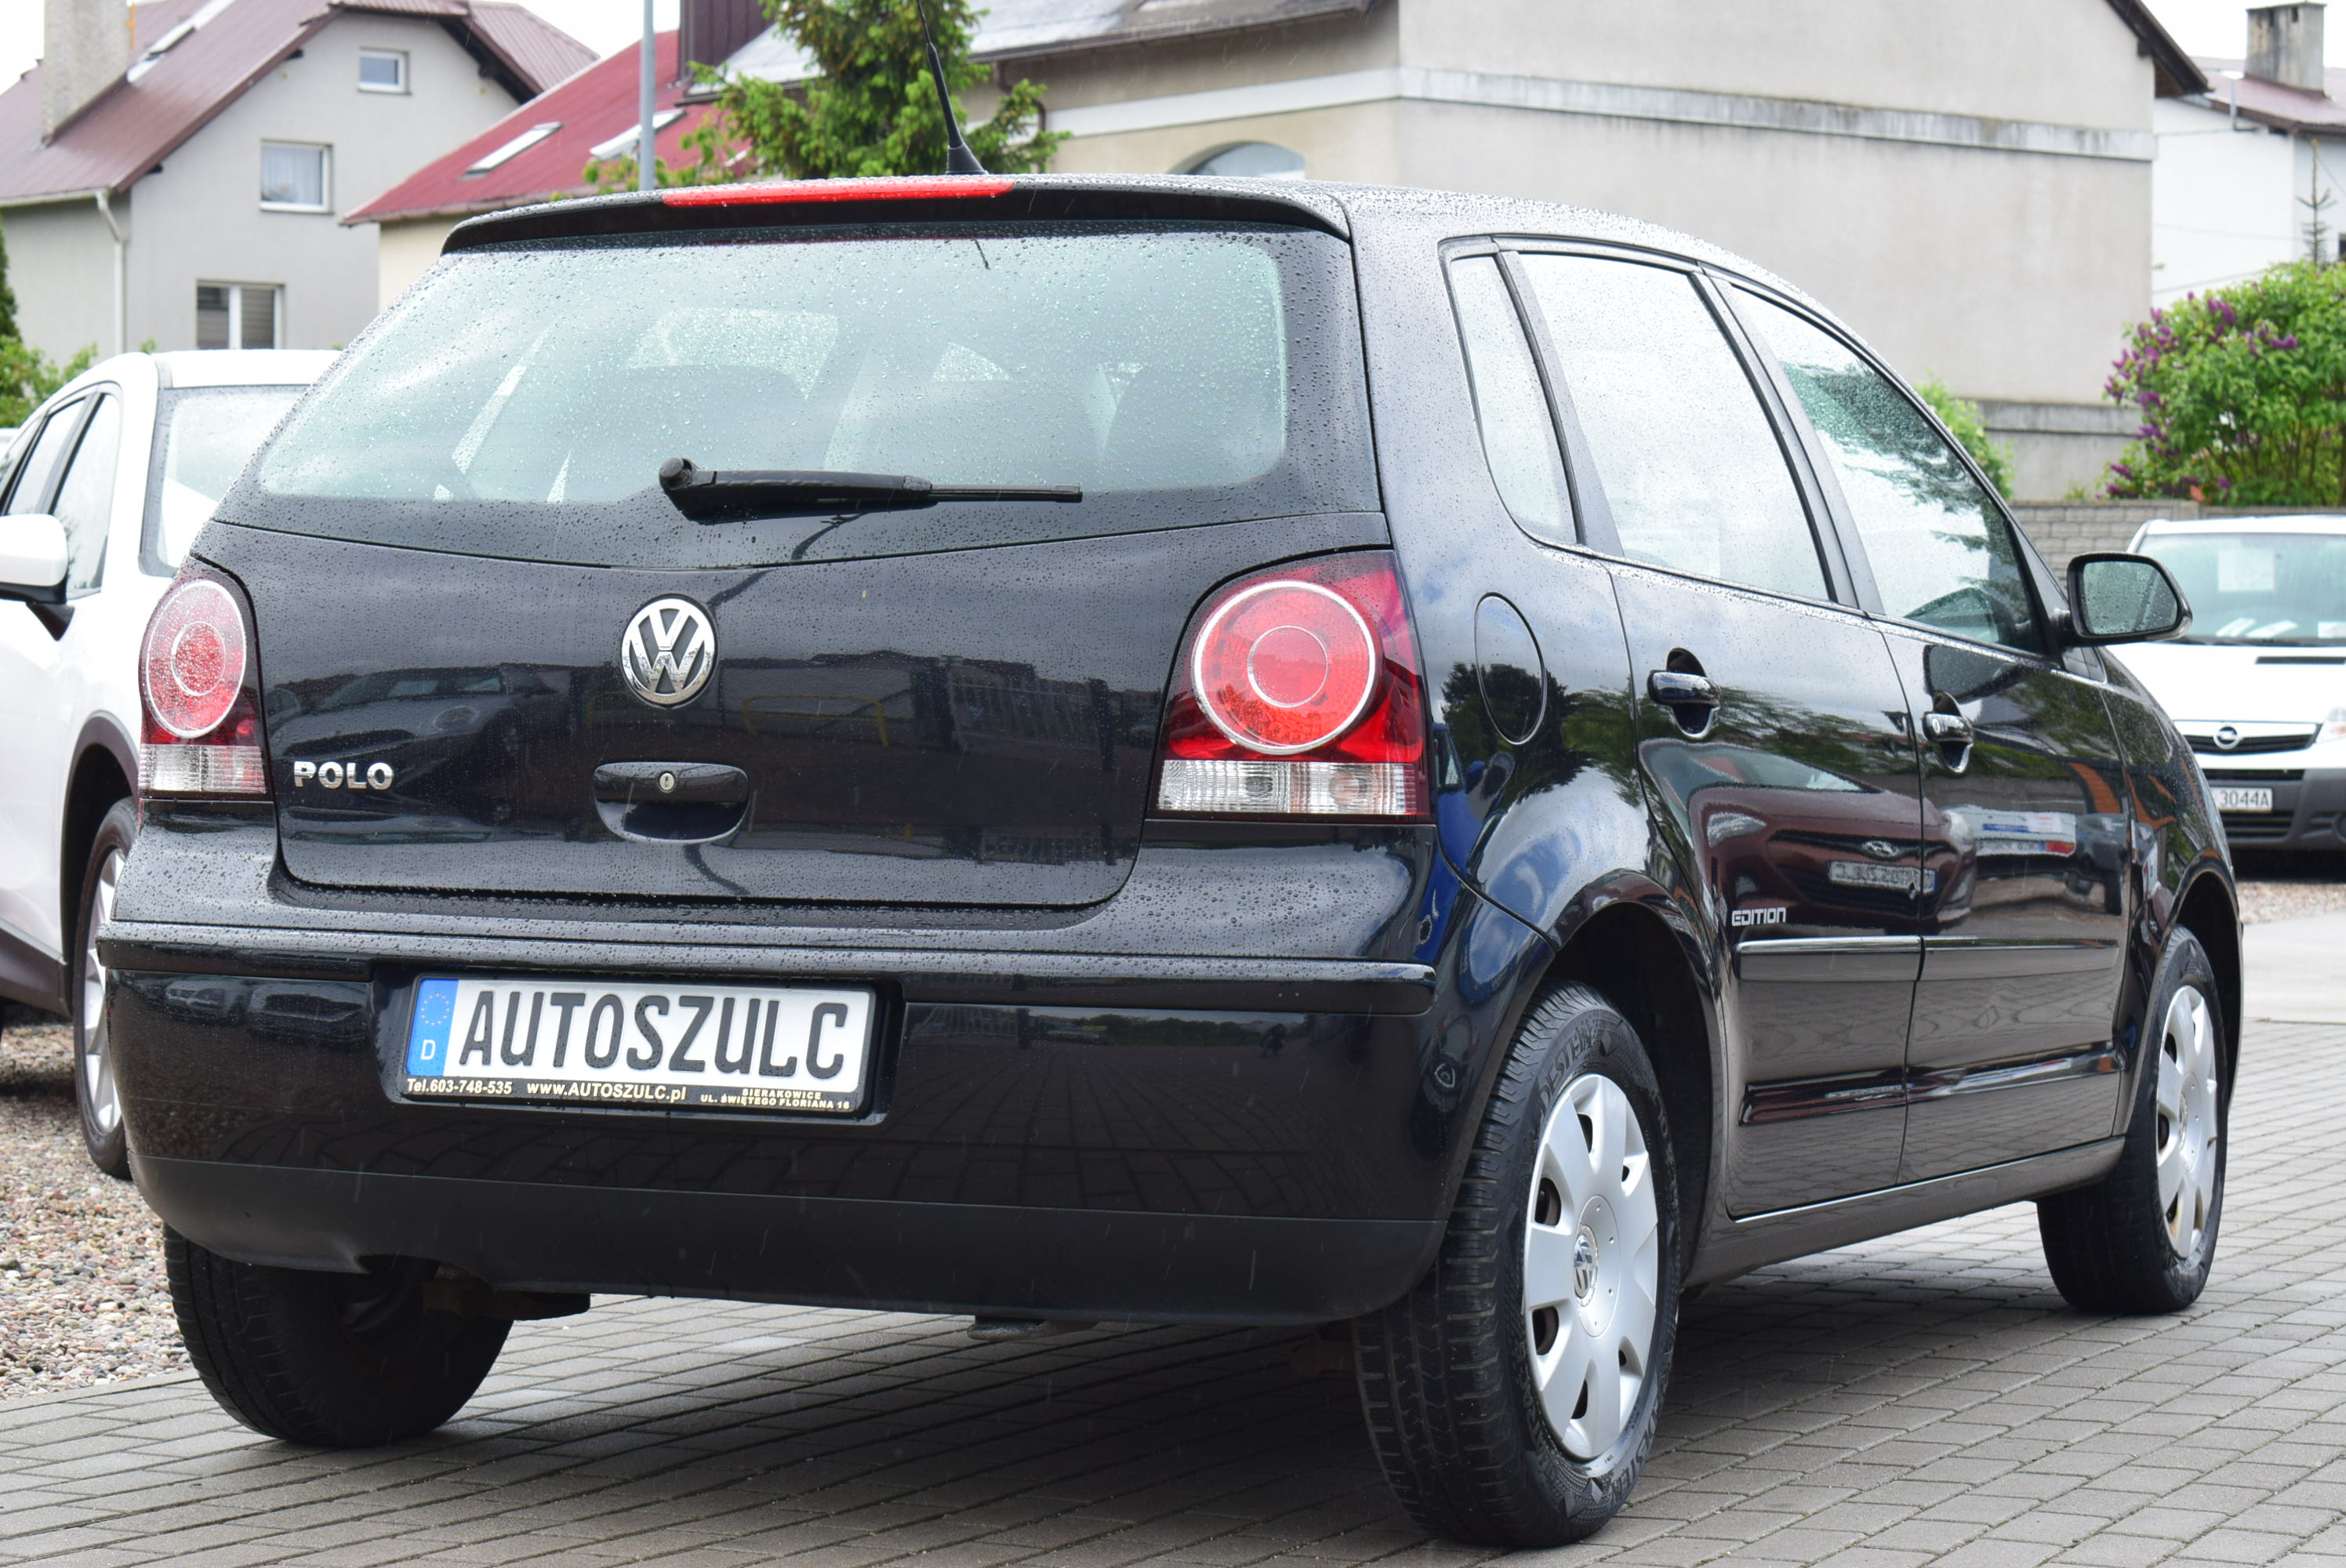 VW Polo 1.2 Benzyna, I-Właściciel, Zadbany, Ekonomiczny, 5-drzwi, Miejski i Zgrabny, Rok Gwarancji full